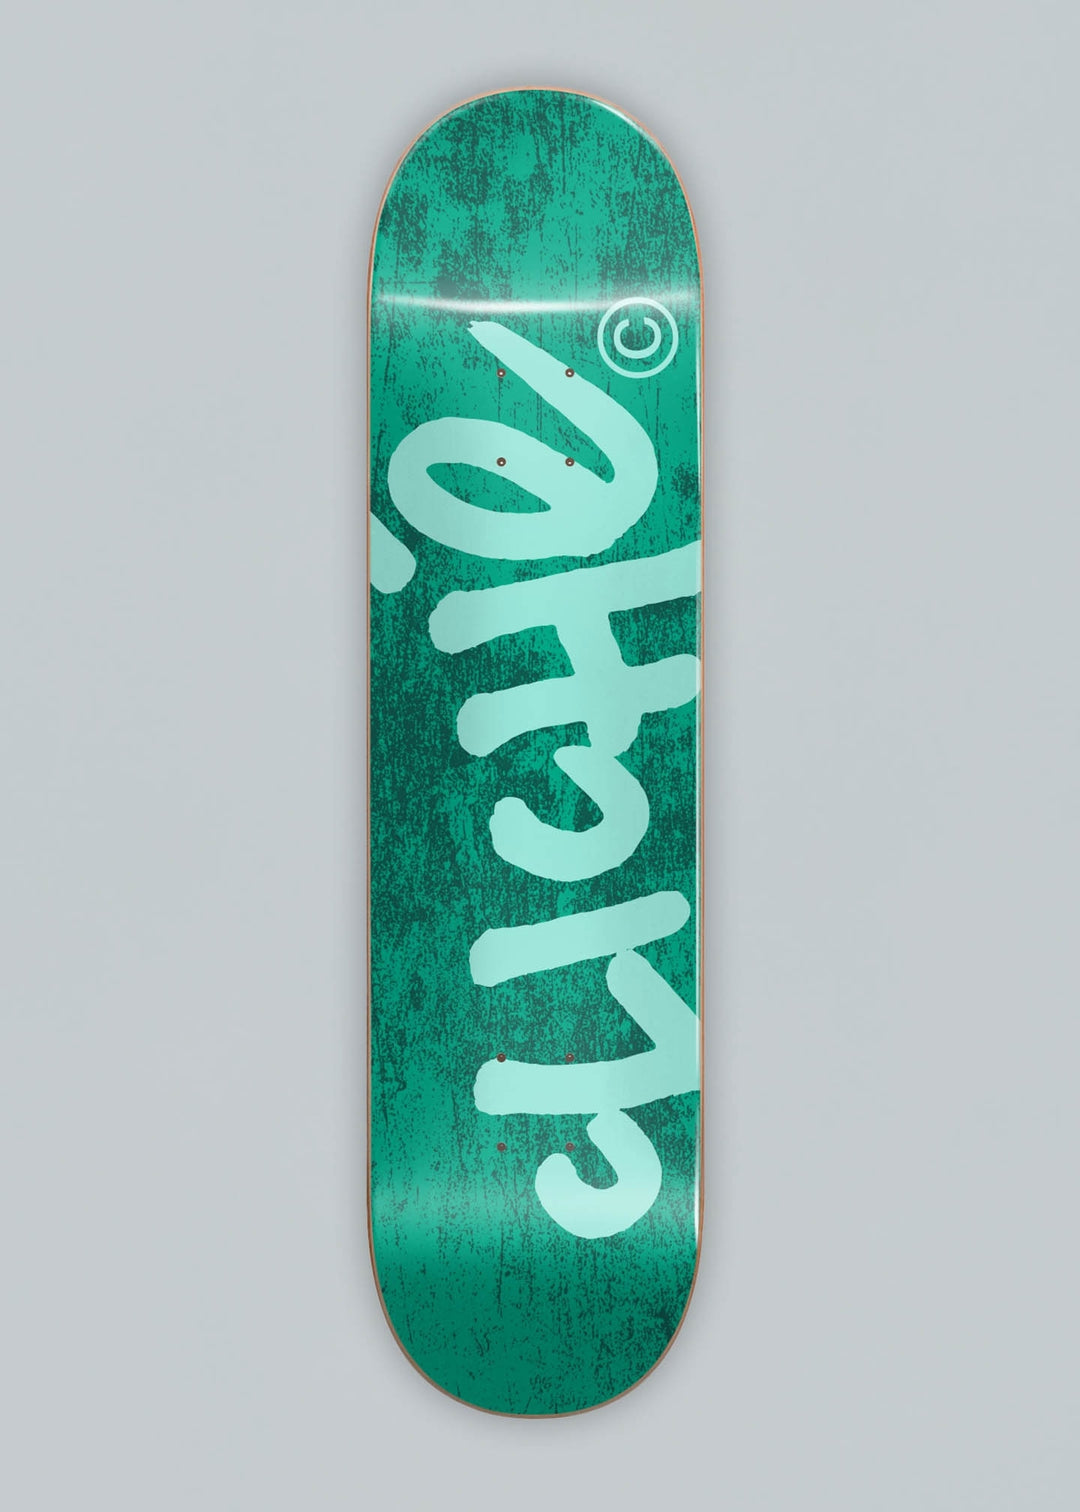 Cliché Skateboards Handwritten Deck 8.25